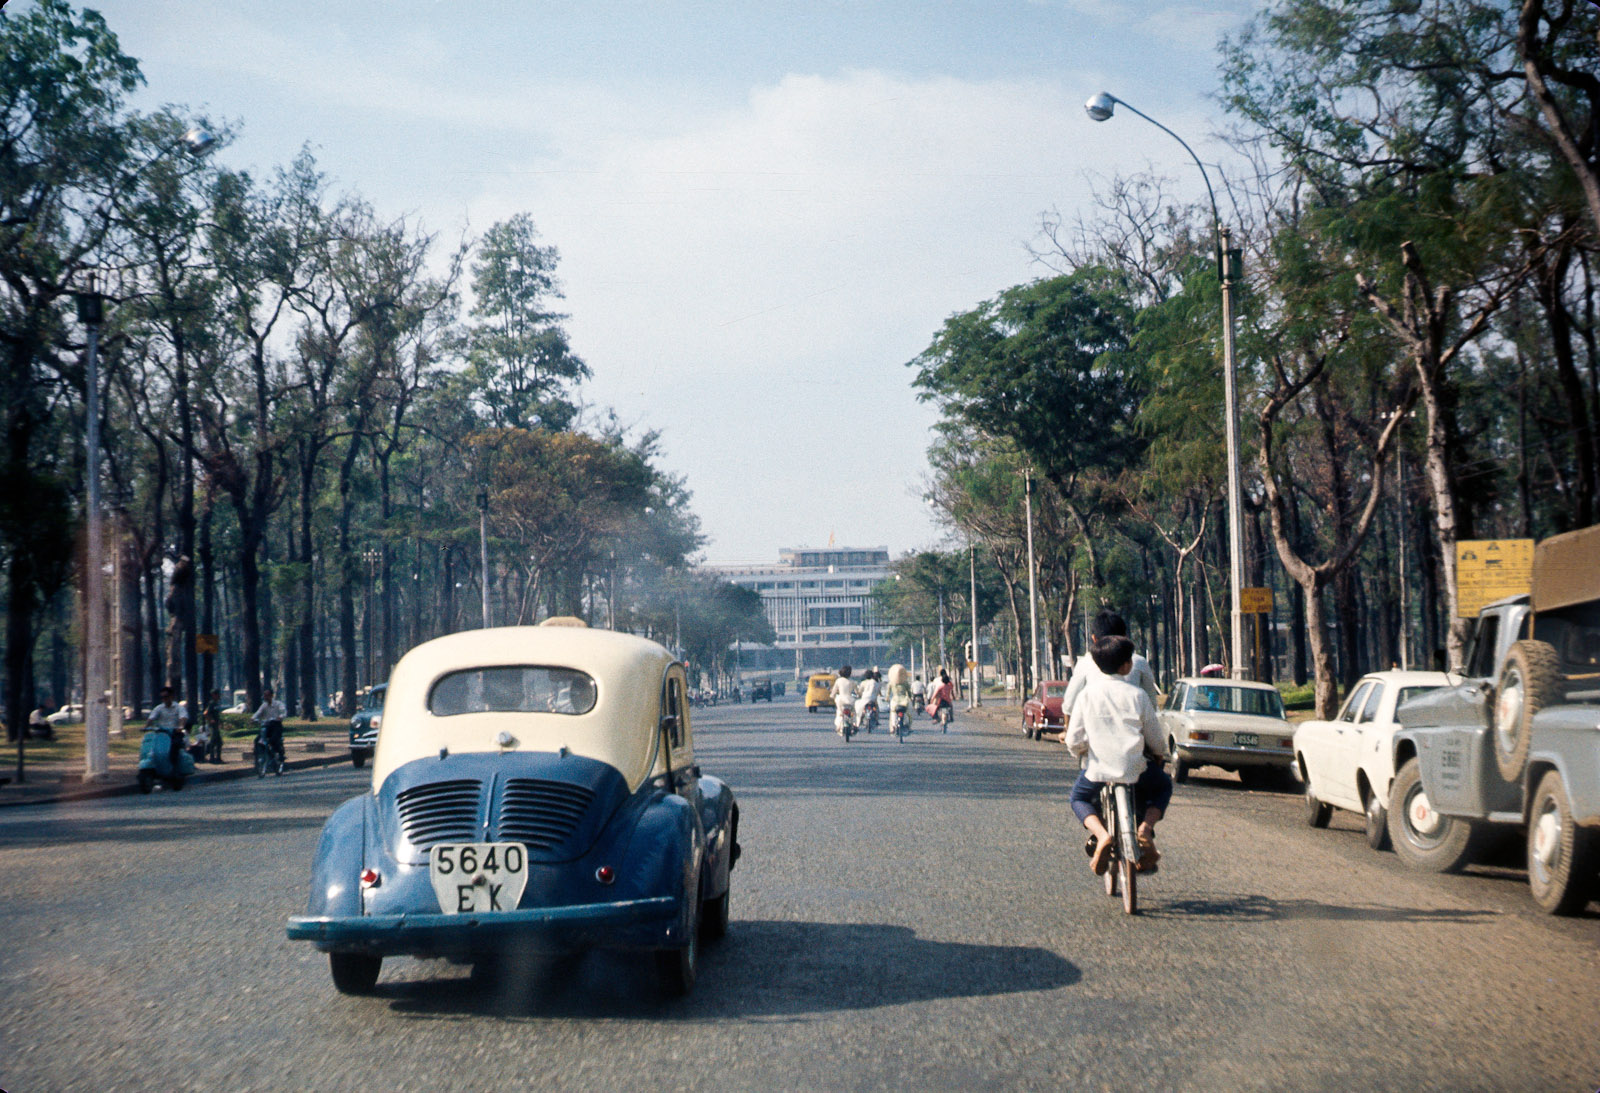 Sài Gòn - Đô thị mở và dung chứa - Tạp chí Tia sáng